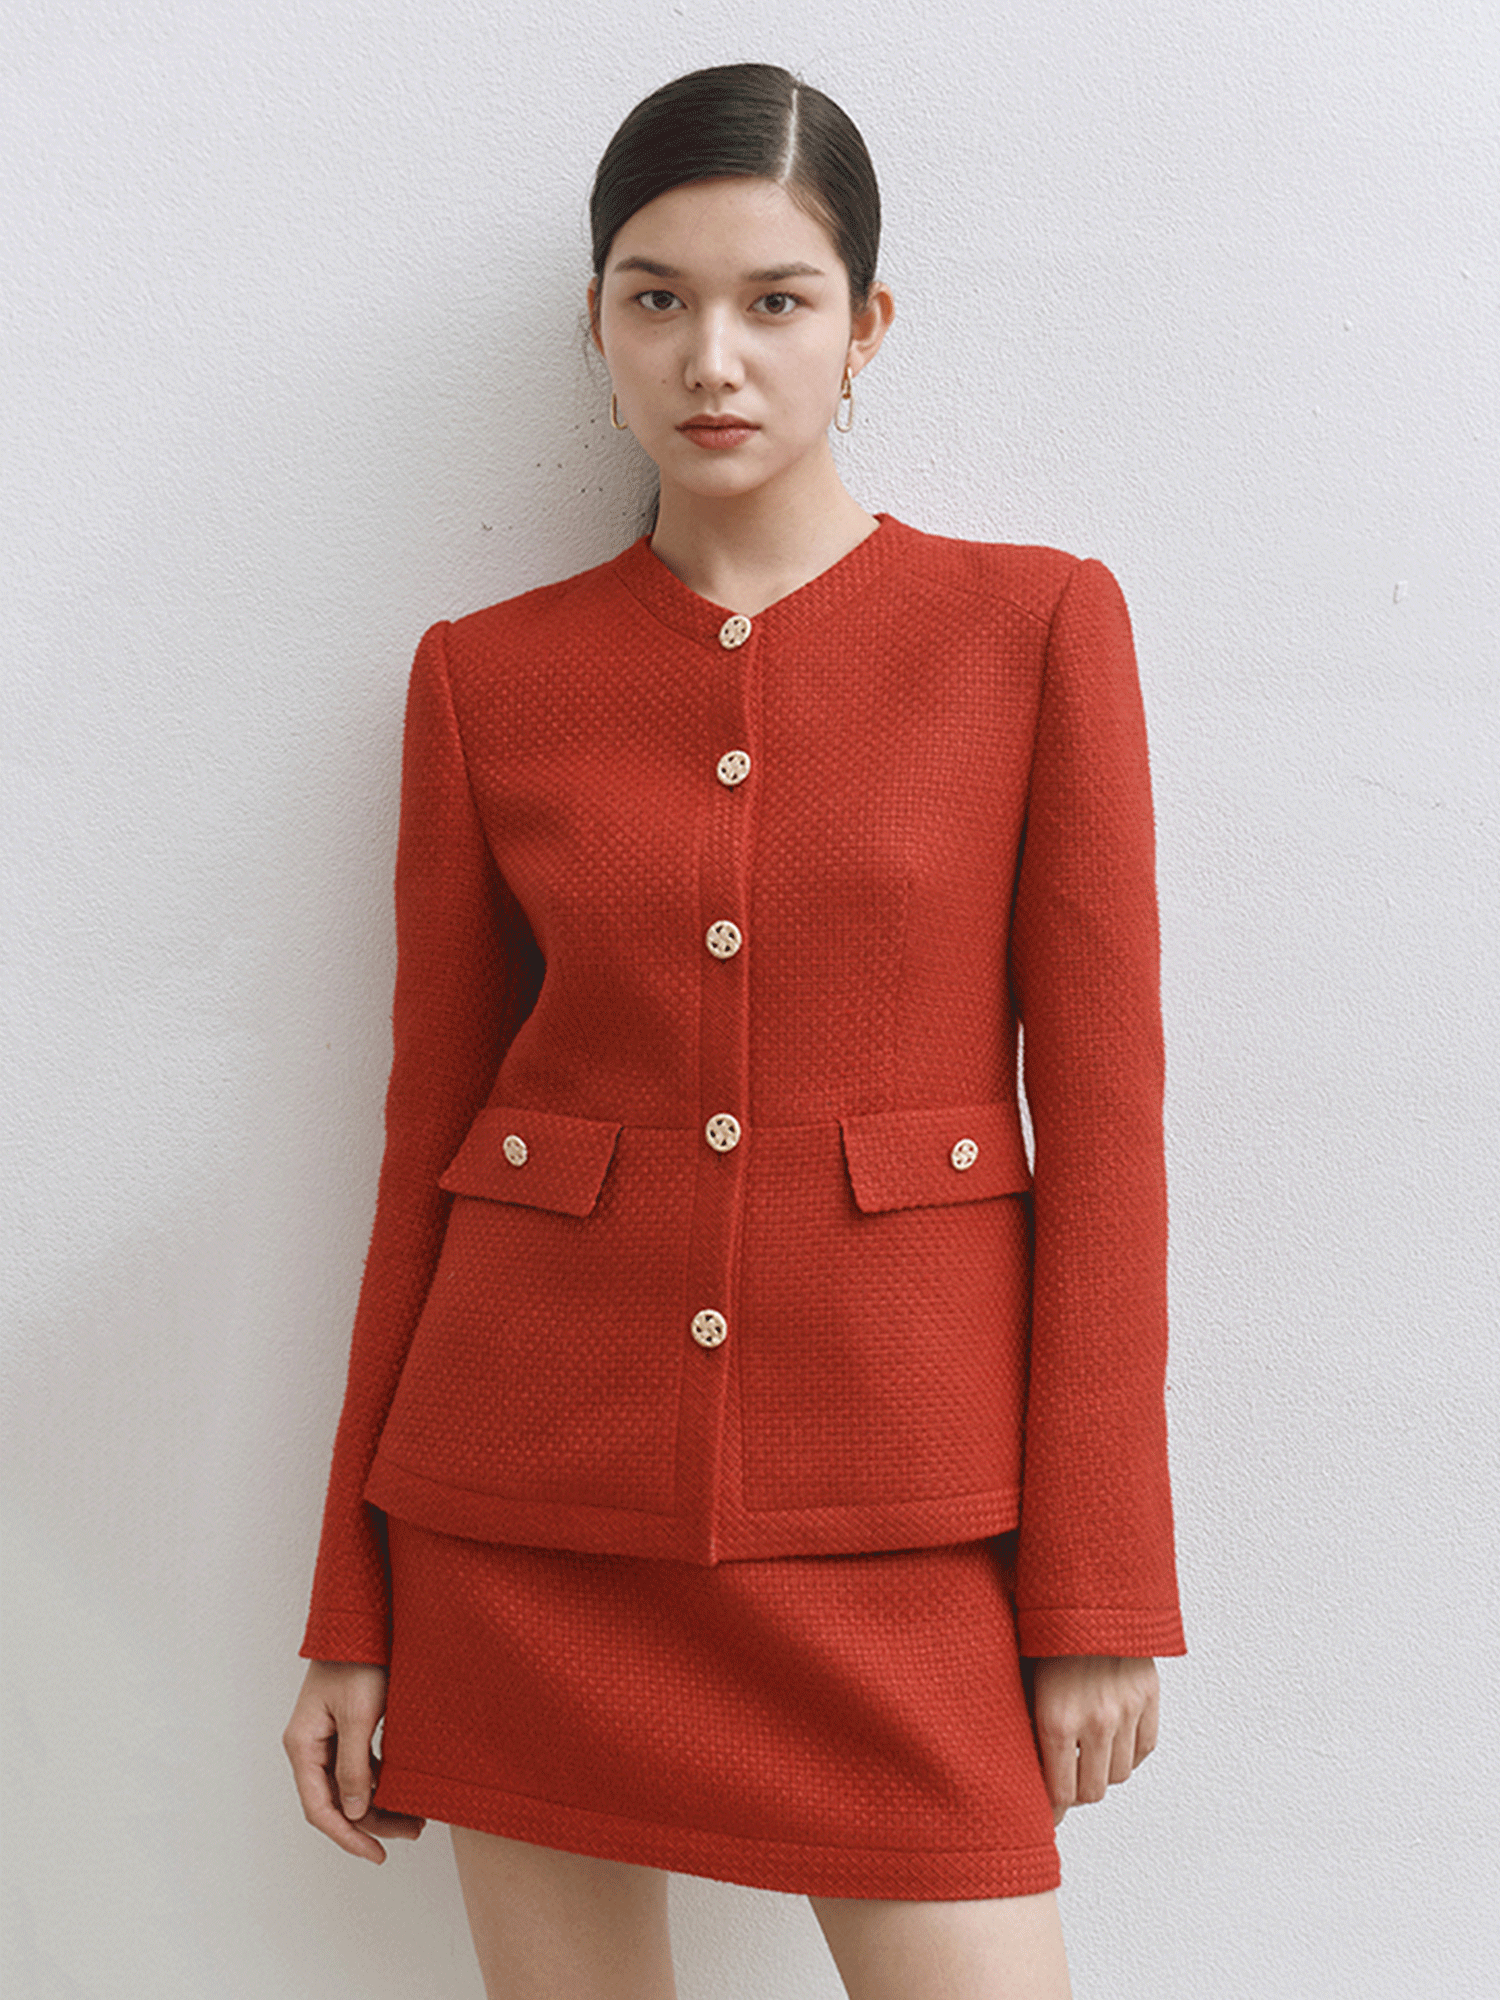 Scarlet Tweed Jacket